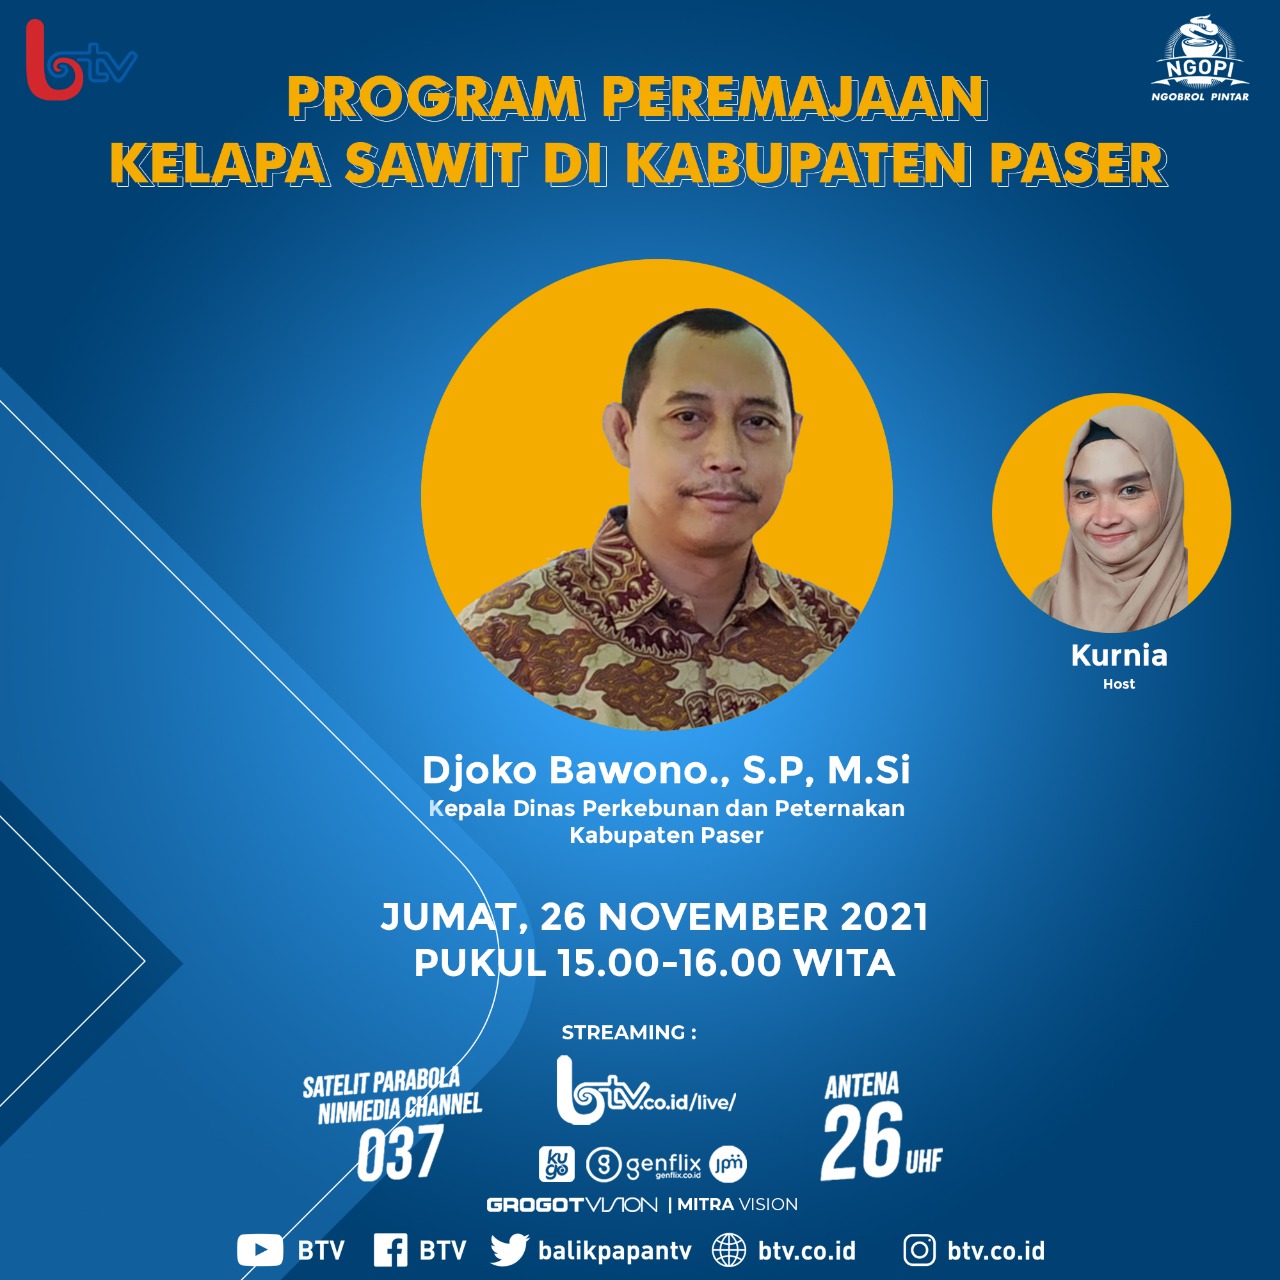 Talk Show Balikpapan TV : Program Peremajaan Sawit Rakyat Di Kabupaten Paser